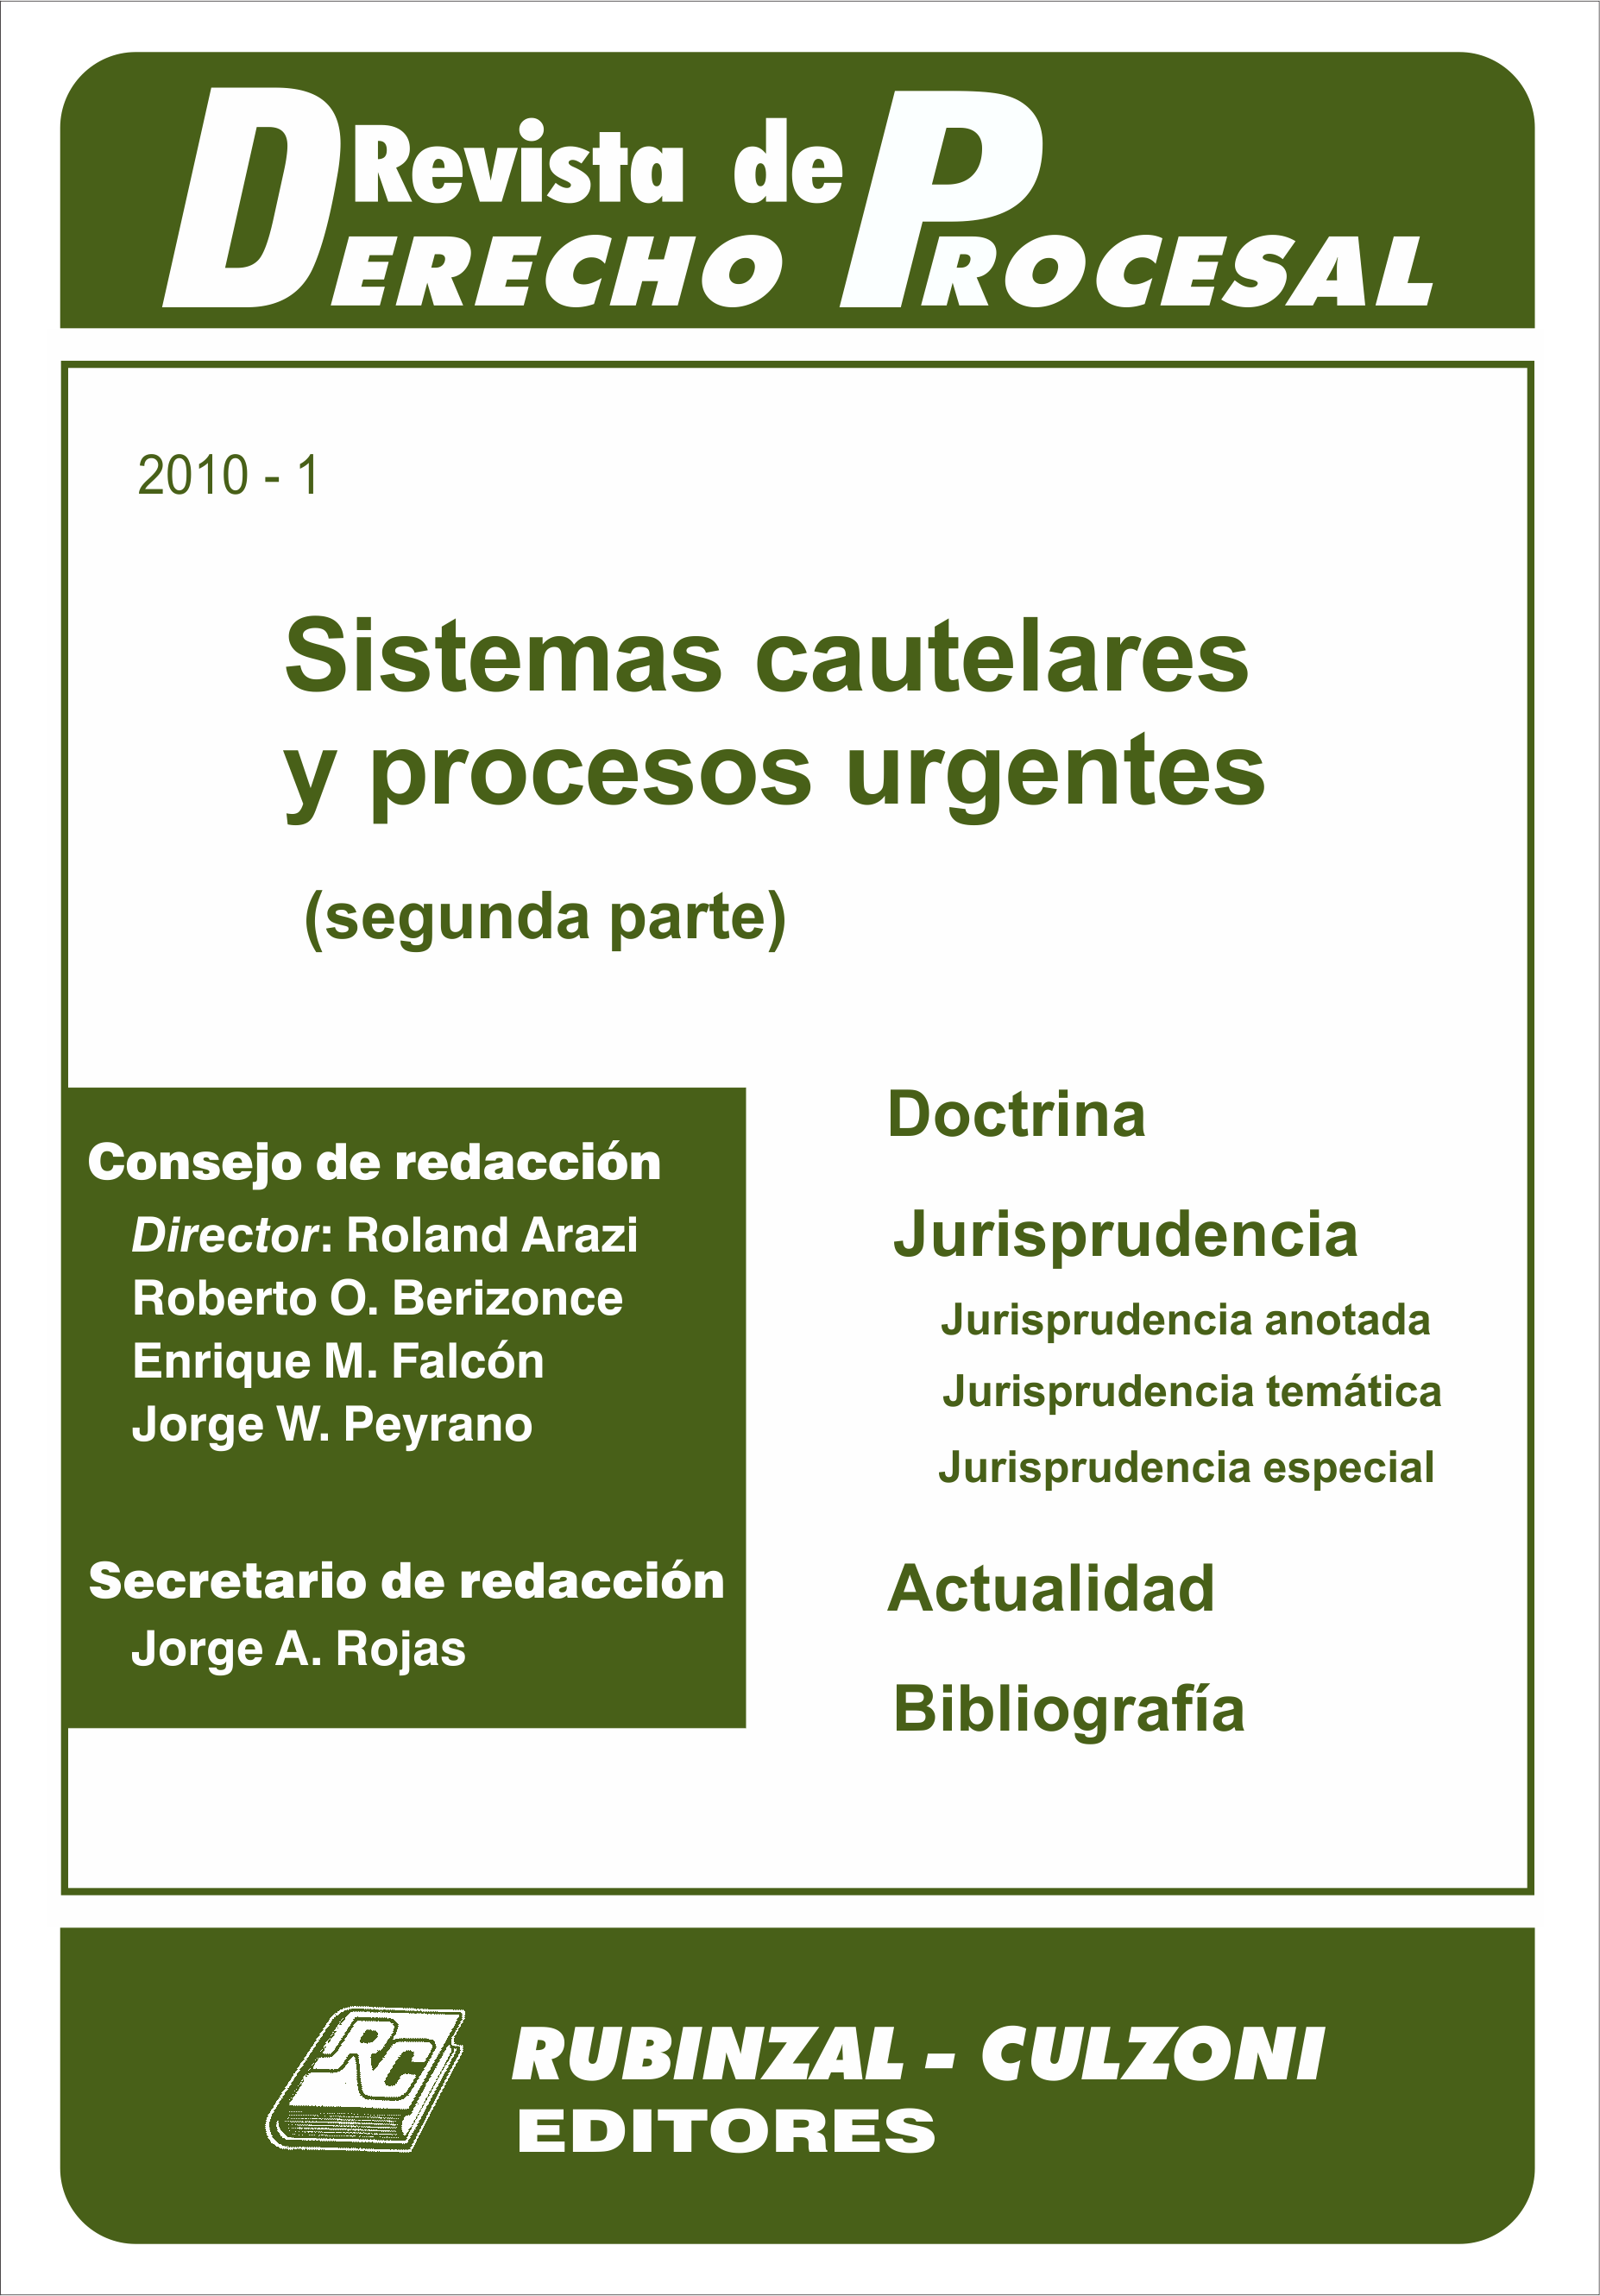 Revista de Derecho Procesal - Sistemas cautelares y procesos urgentes (segunda parte).